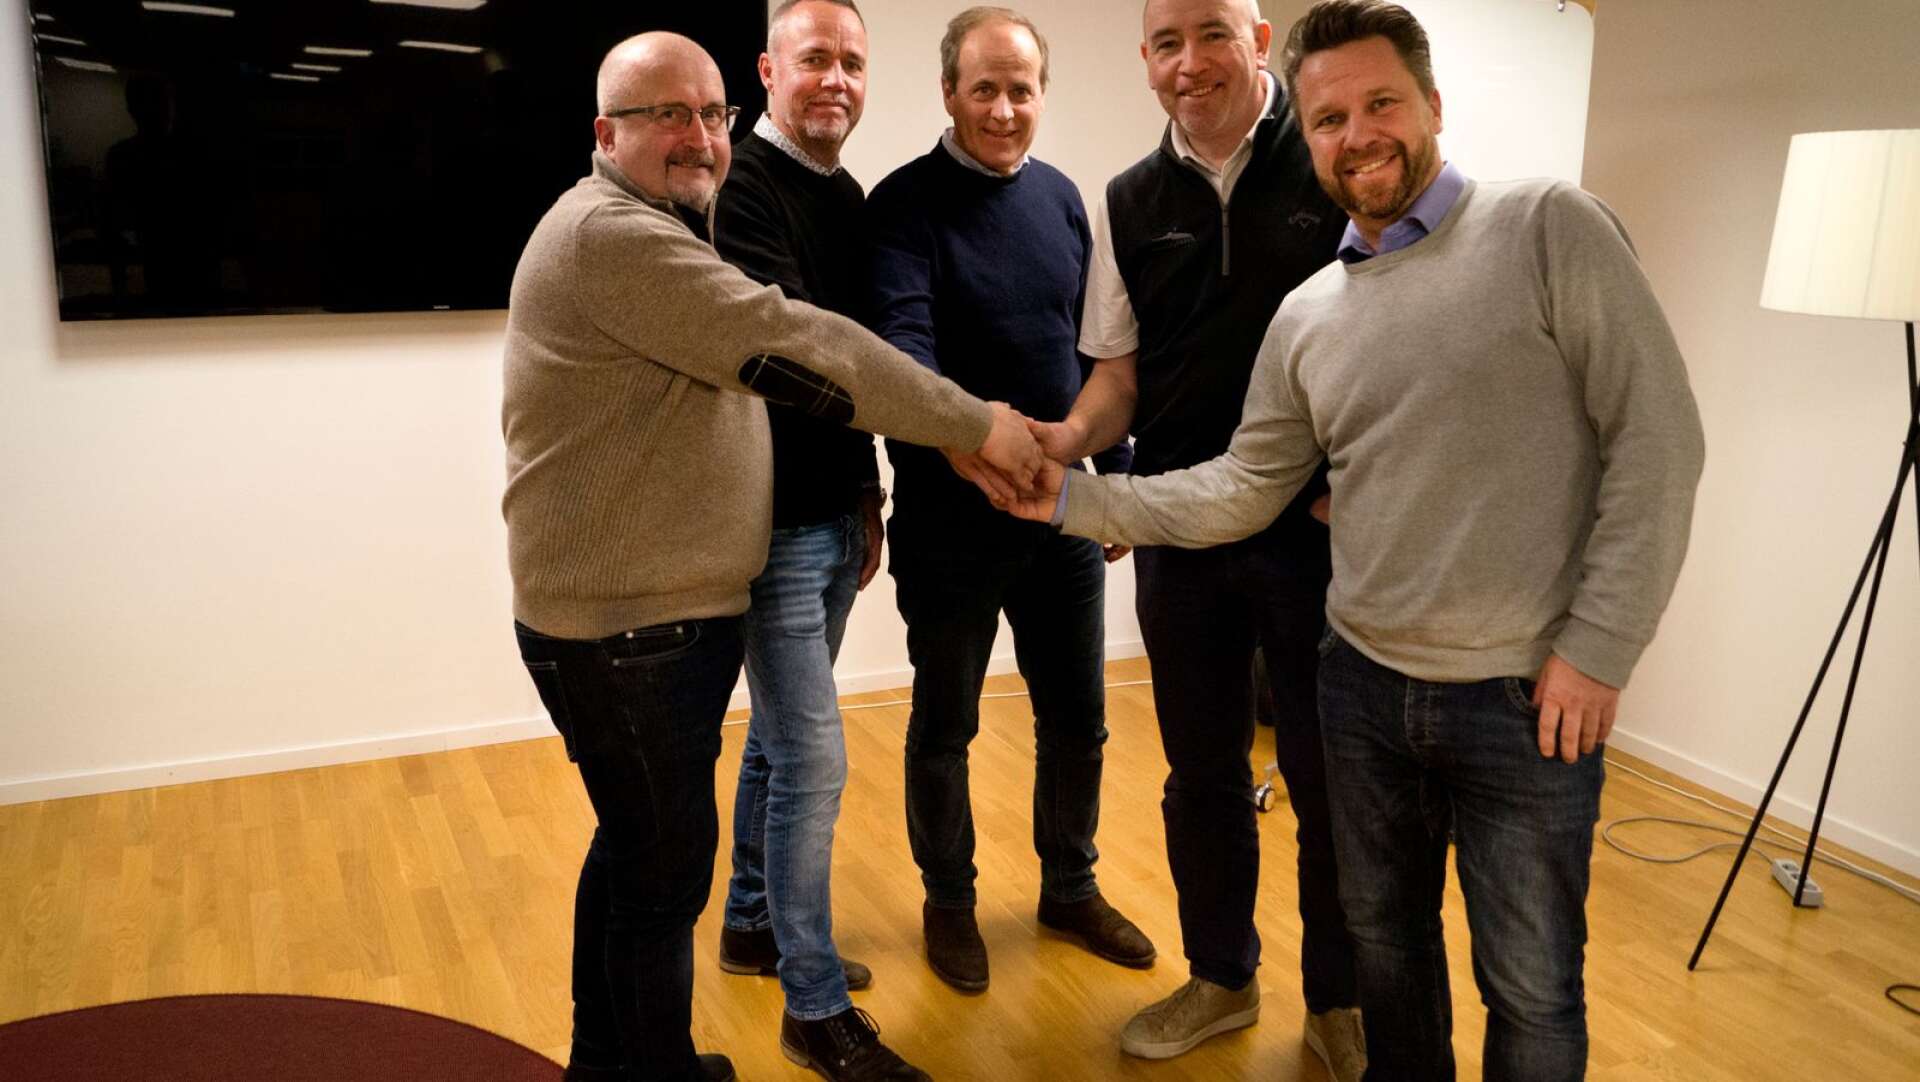 Sommarro golfklubb får nya ägare. Från vänster Anders Bäckström, Mats Hultman, Claes Hagberg, Jonas Seleskog och Magnus Bodin.